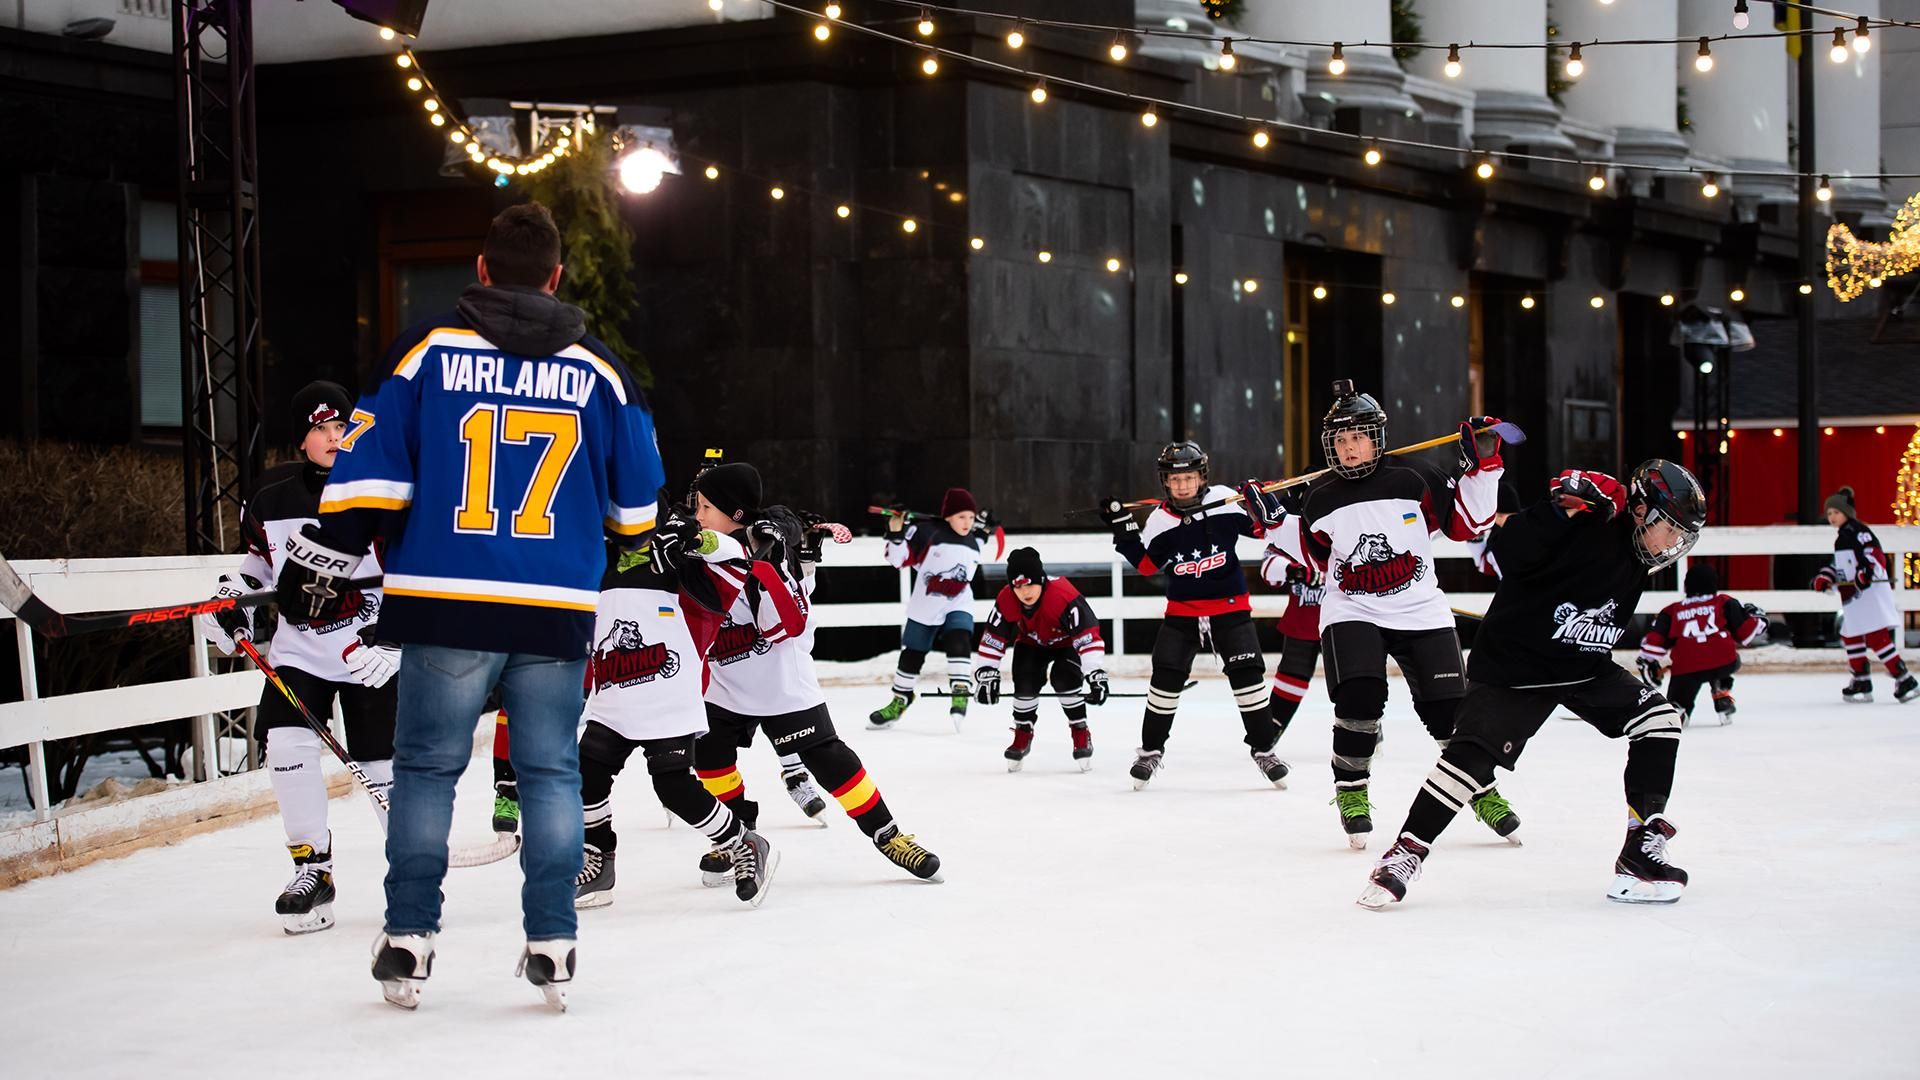 Звезда НХЛ провел тренировку с юными хоккеистами на катке в Киеве: фото и видео